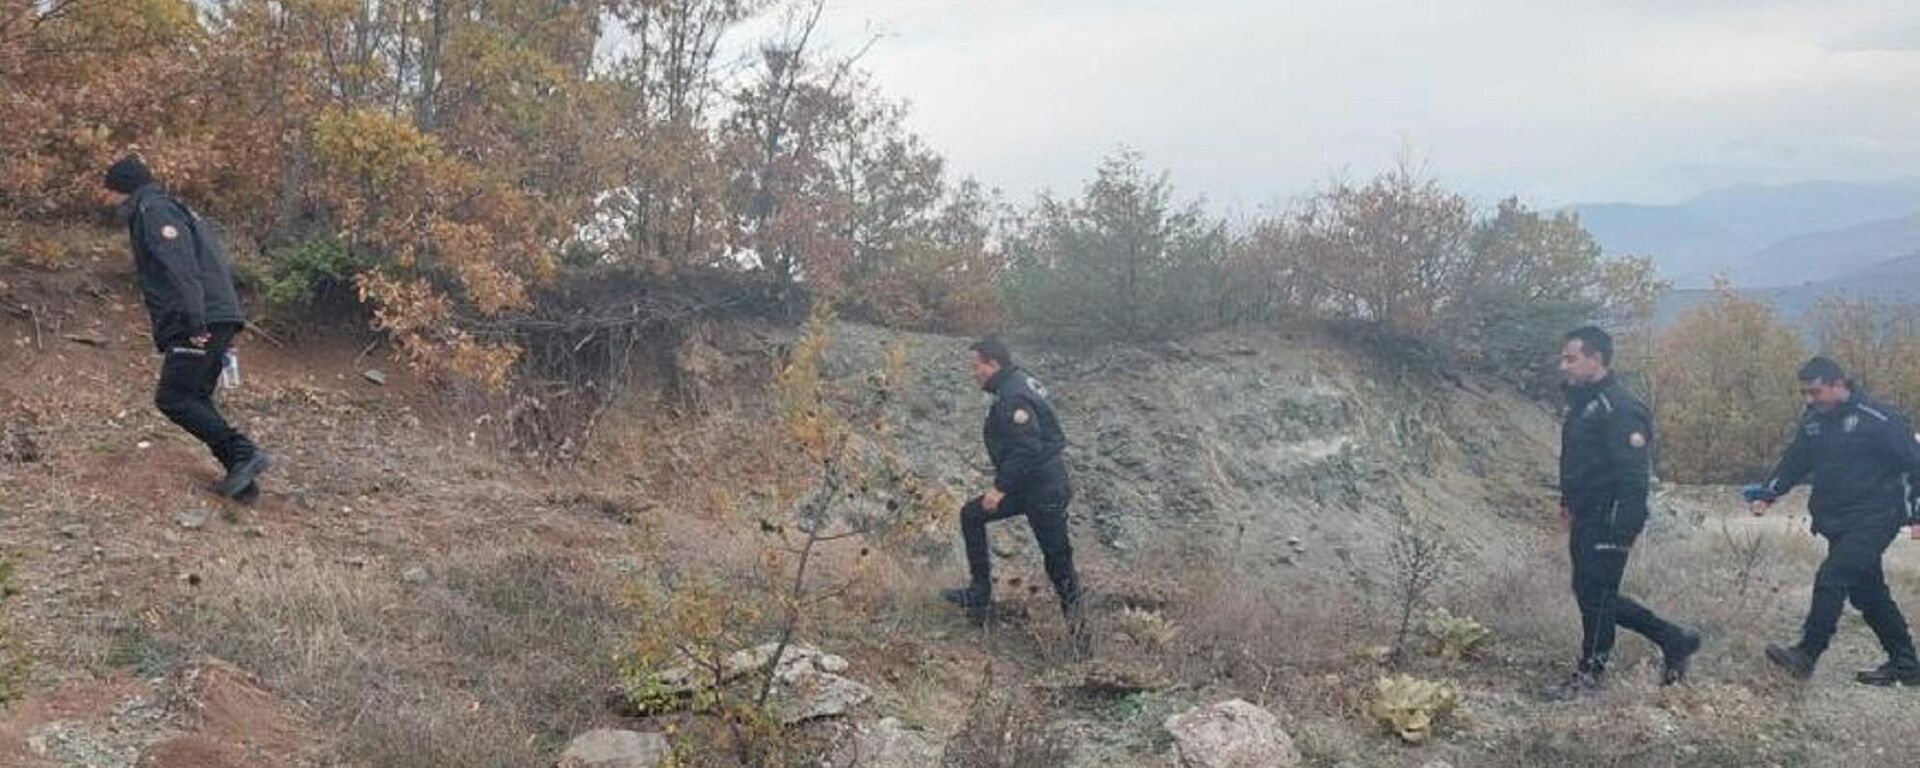 Tokat’ın Almus ilçesinde bulunan ceset parçalarının kayıp polis memuruna ait olma ihtimali üzerinde duruluyor - Sputnik Türkiye, 1920, 06.06.2022